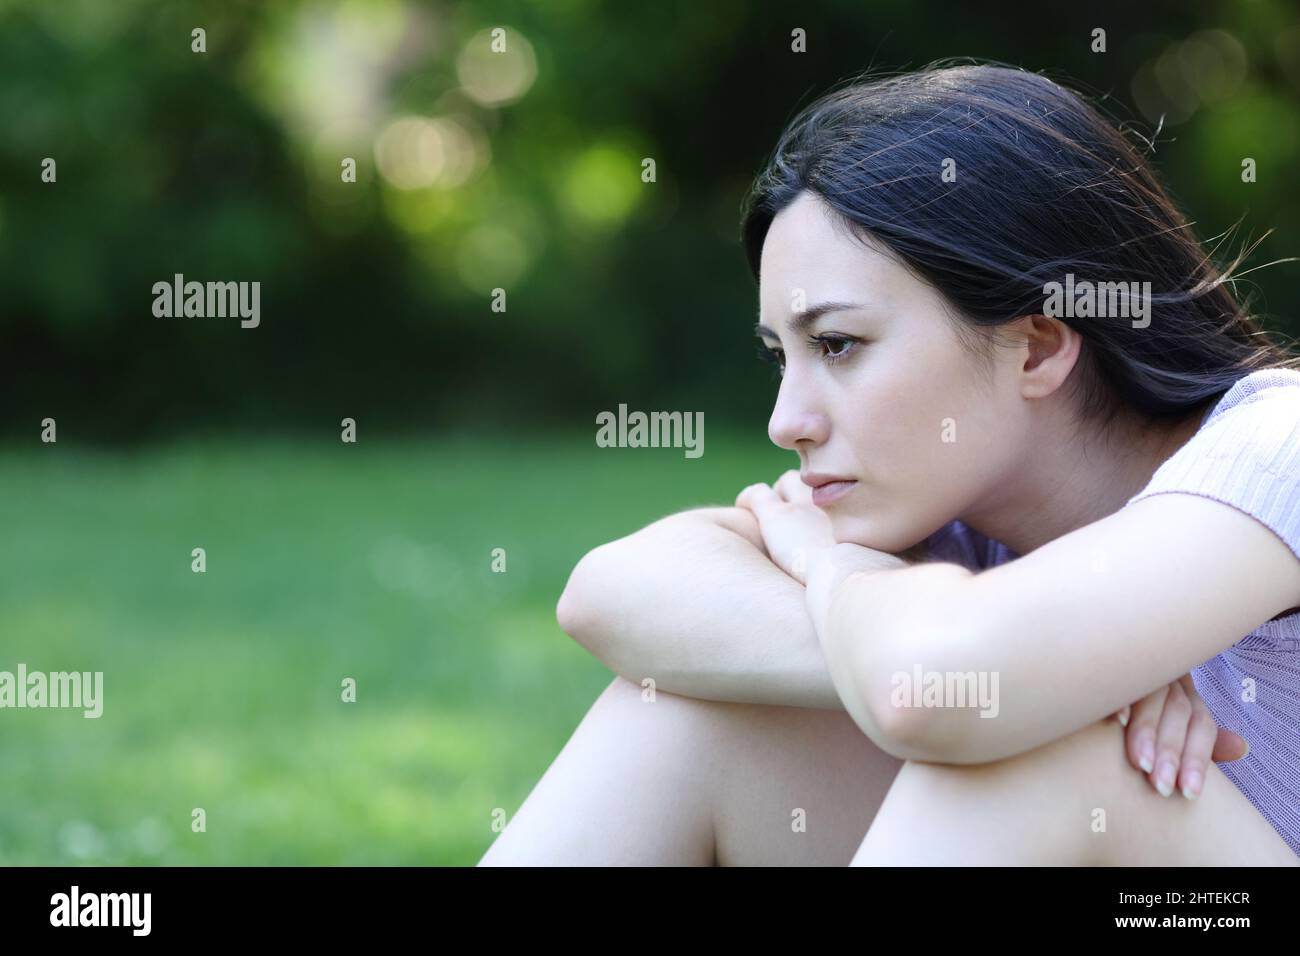 Traurige asiatische Frau, die sich beschwert, als sie allein in einem Park saß und wegschaute Stockfoto